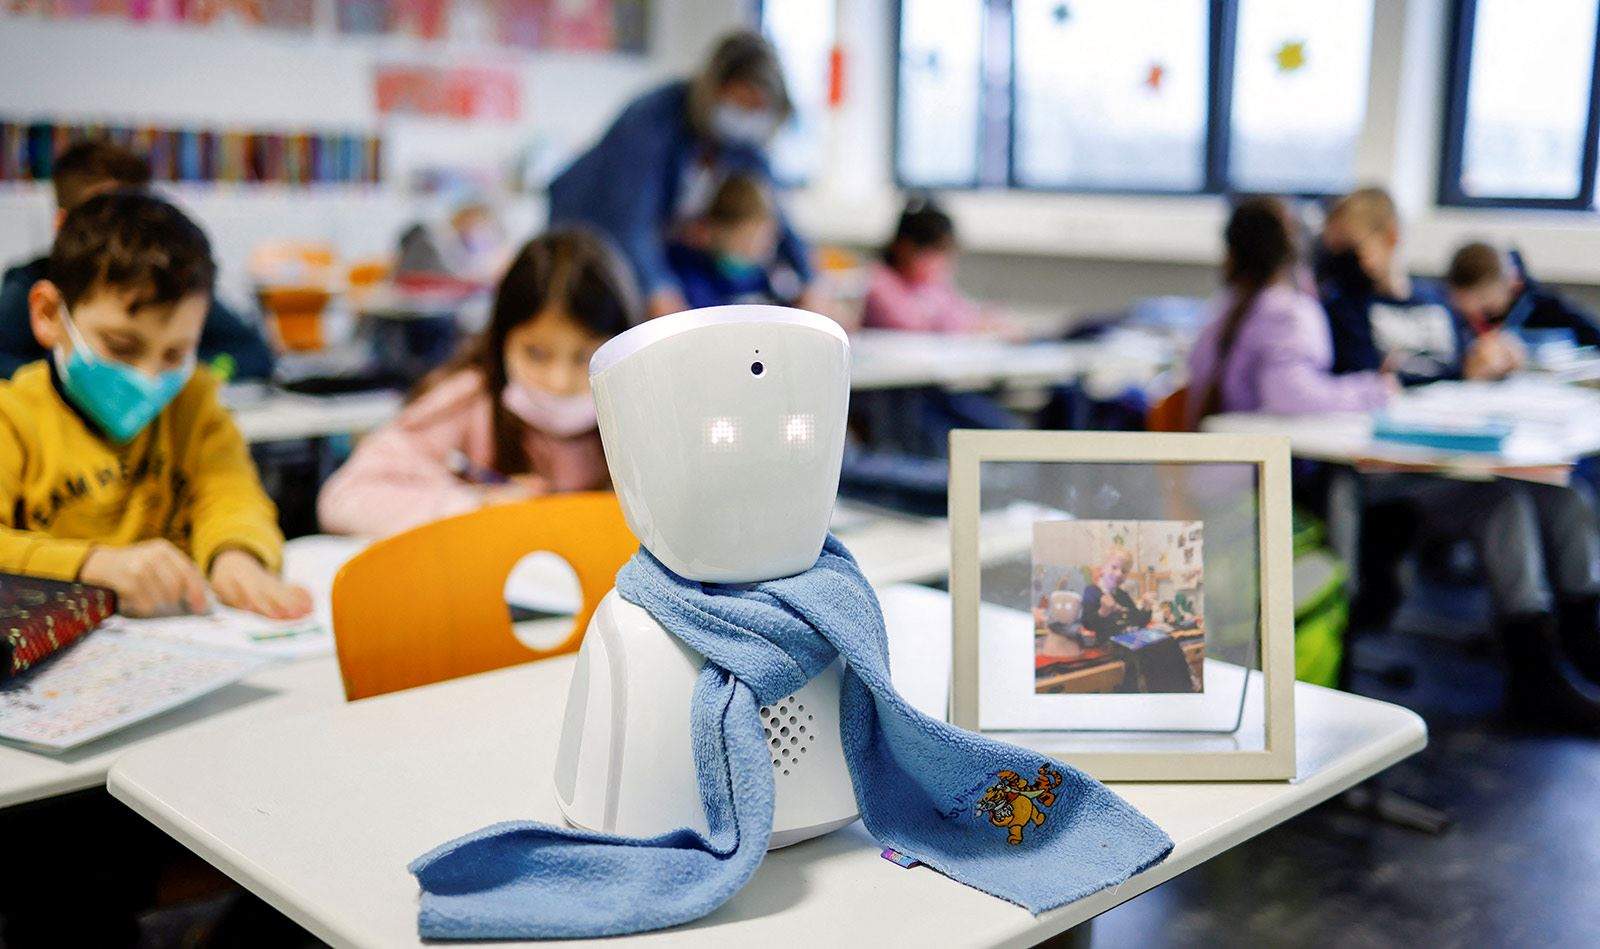     بالصور ـ روبوت يذهب إلى المدرسة بدلاً من طفل ألماني مريض